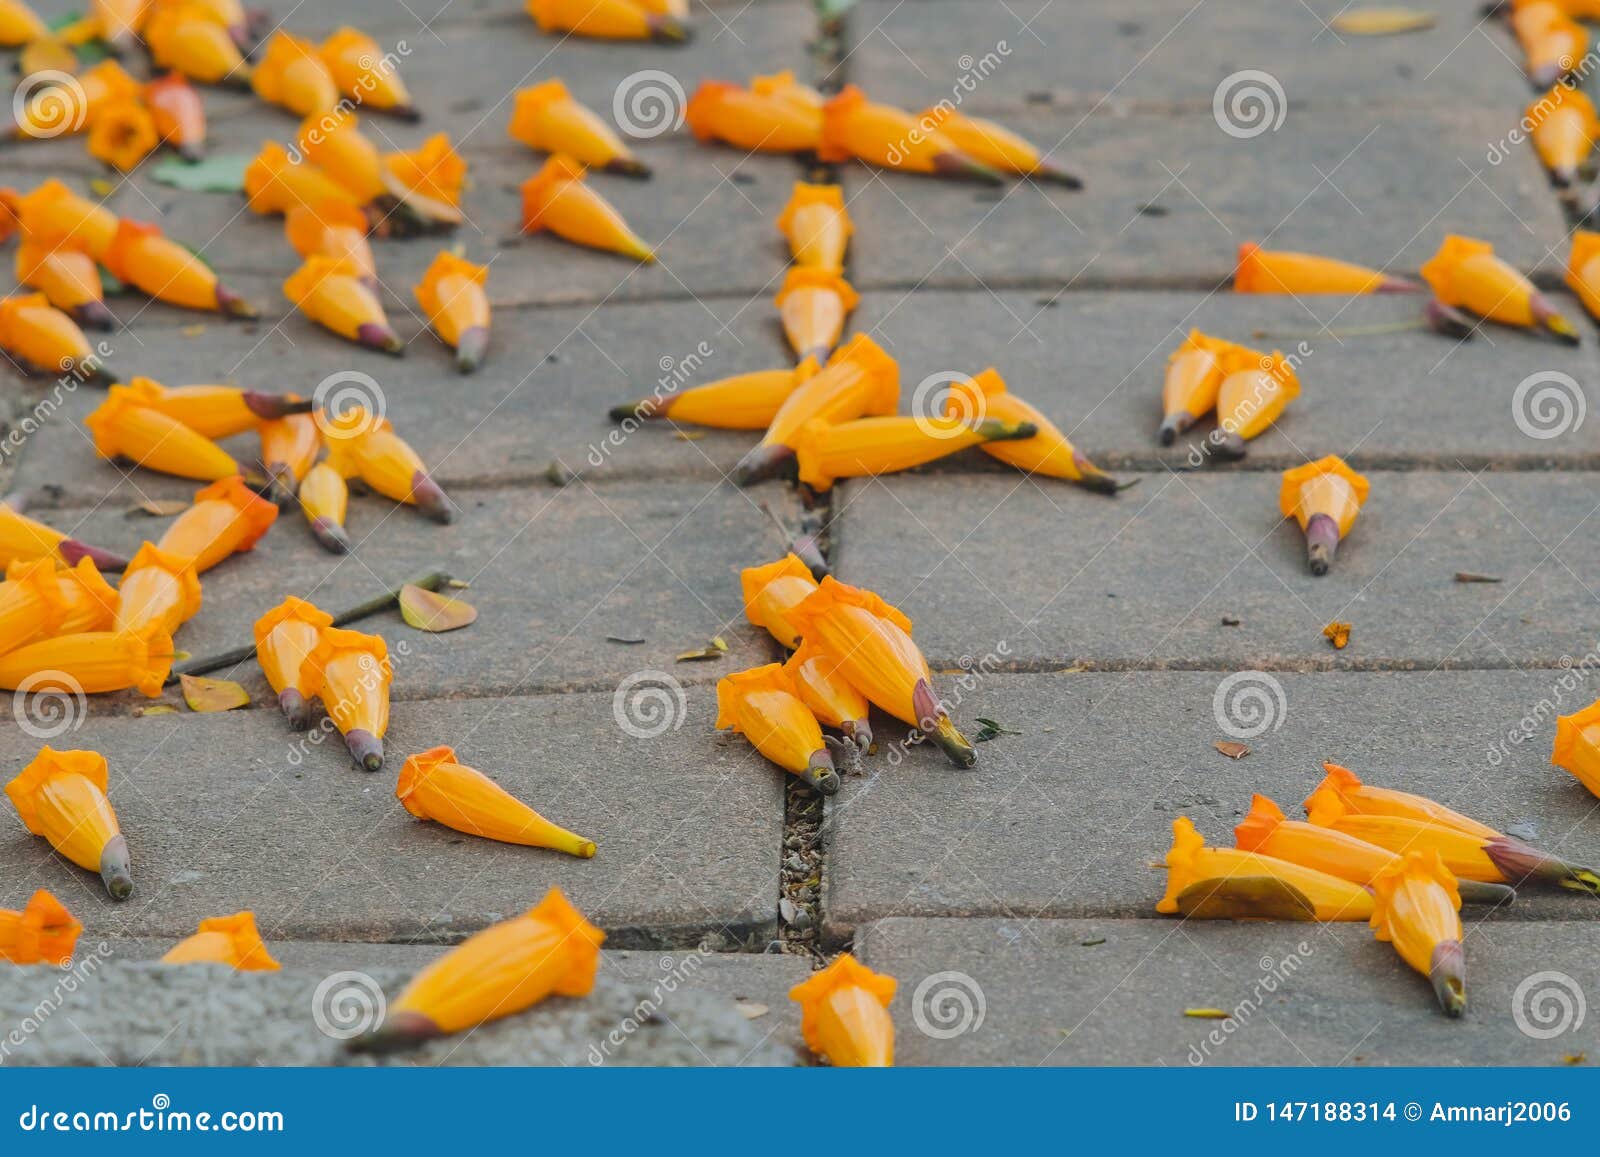 orange radermachera ignea flowers or tree jasmine